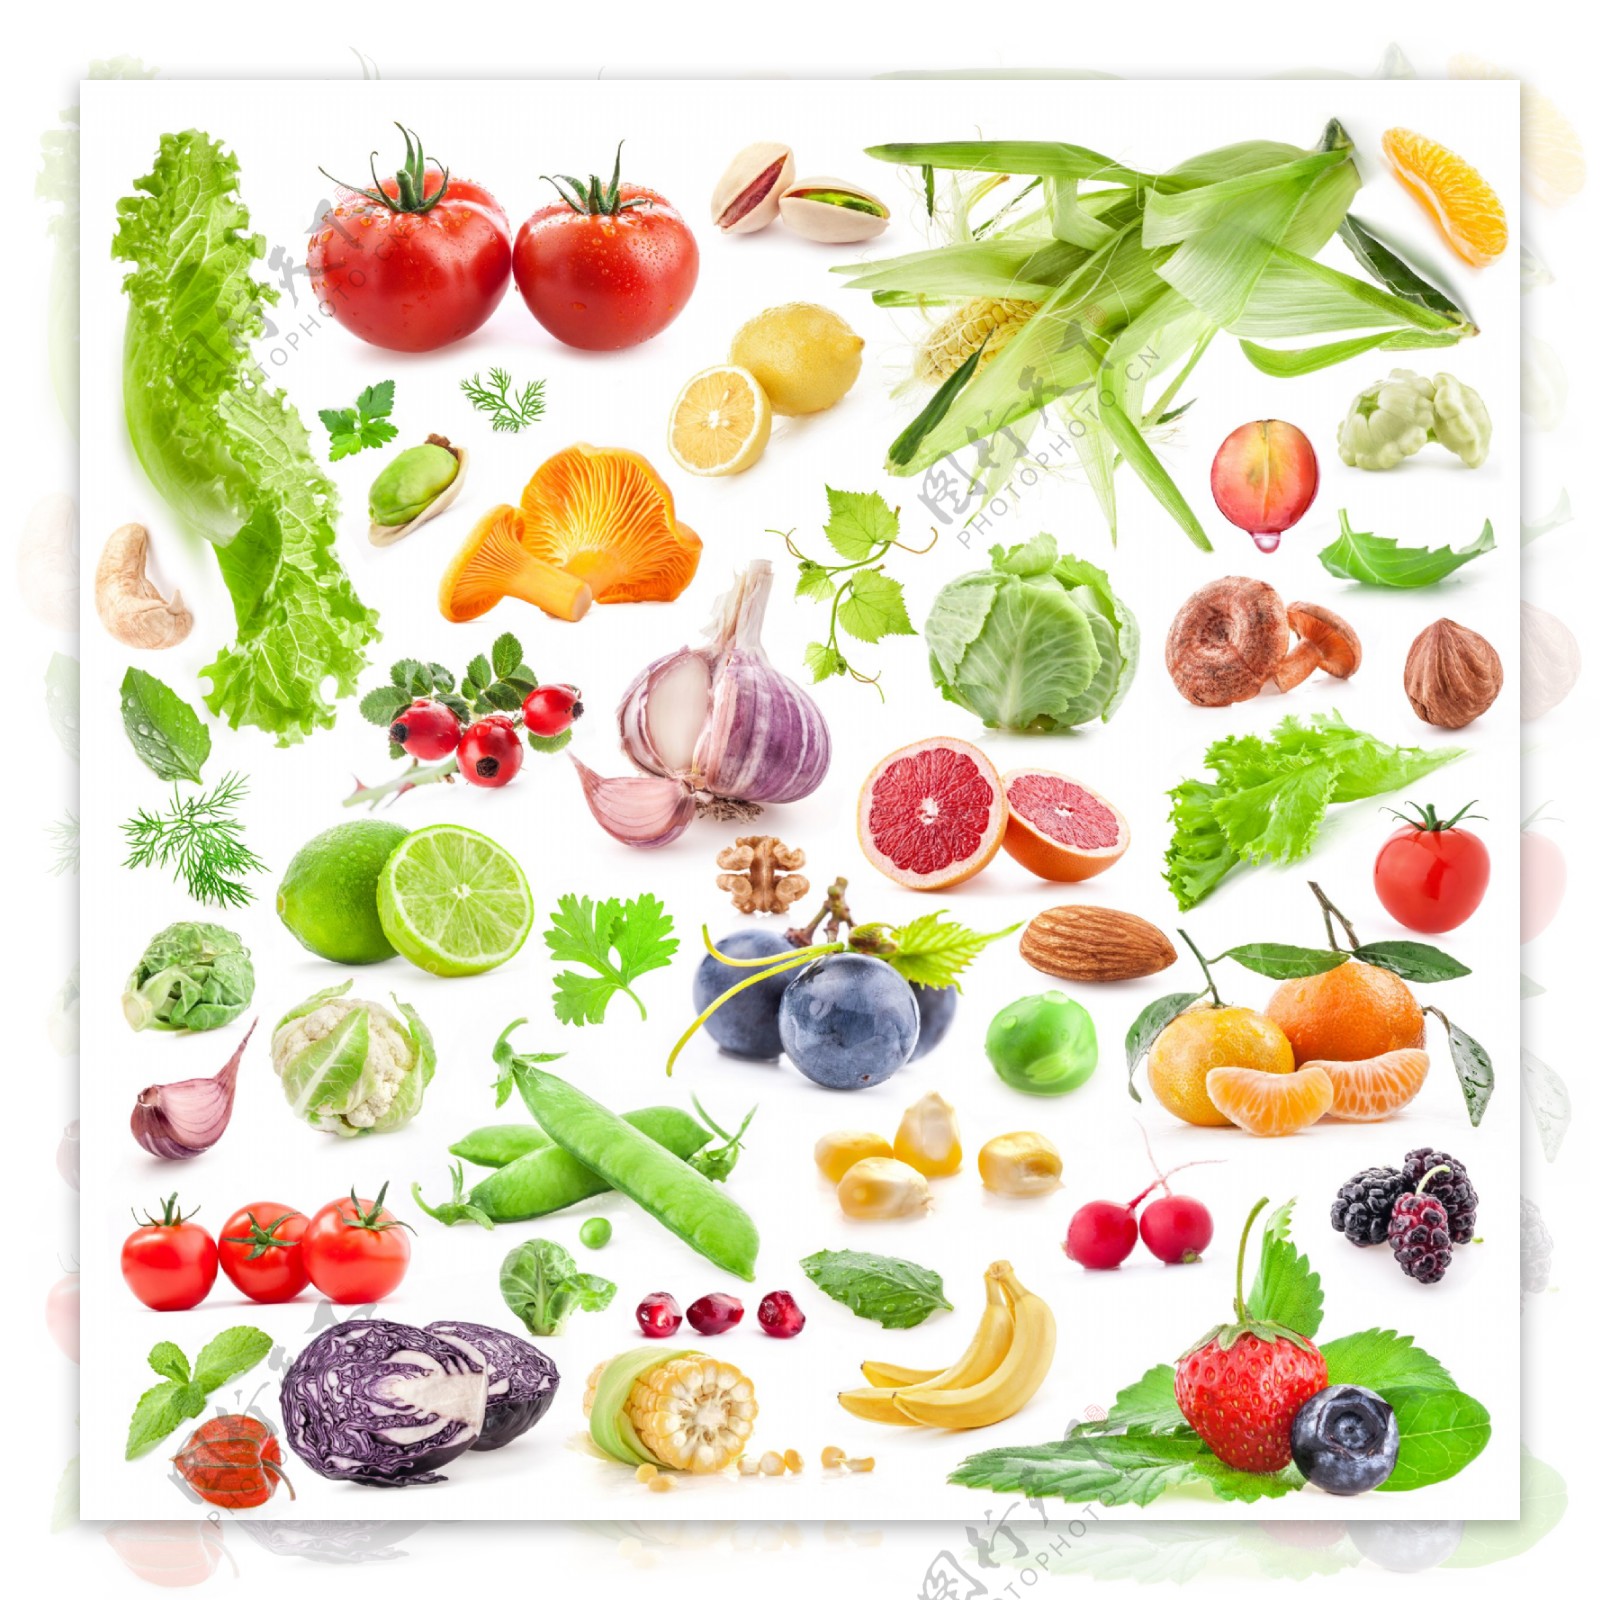 各种新鲜蔬菜水果图片